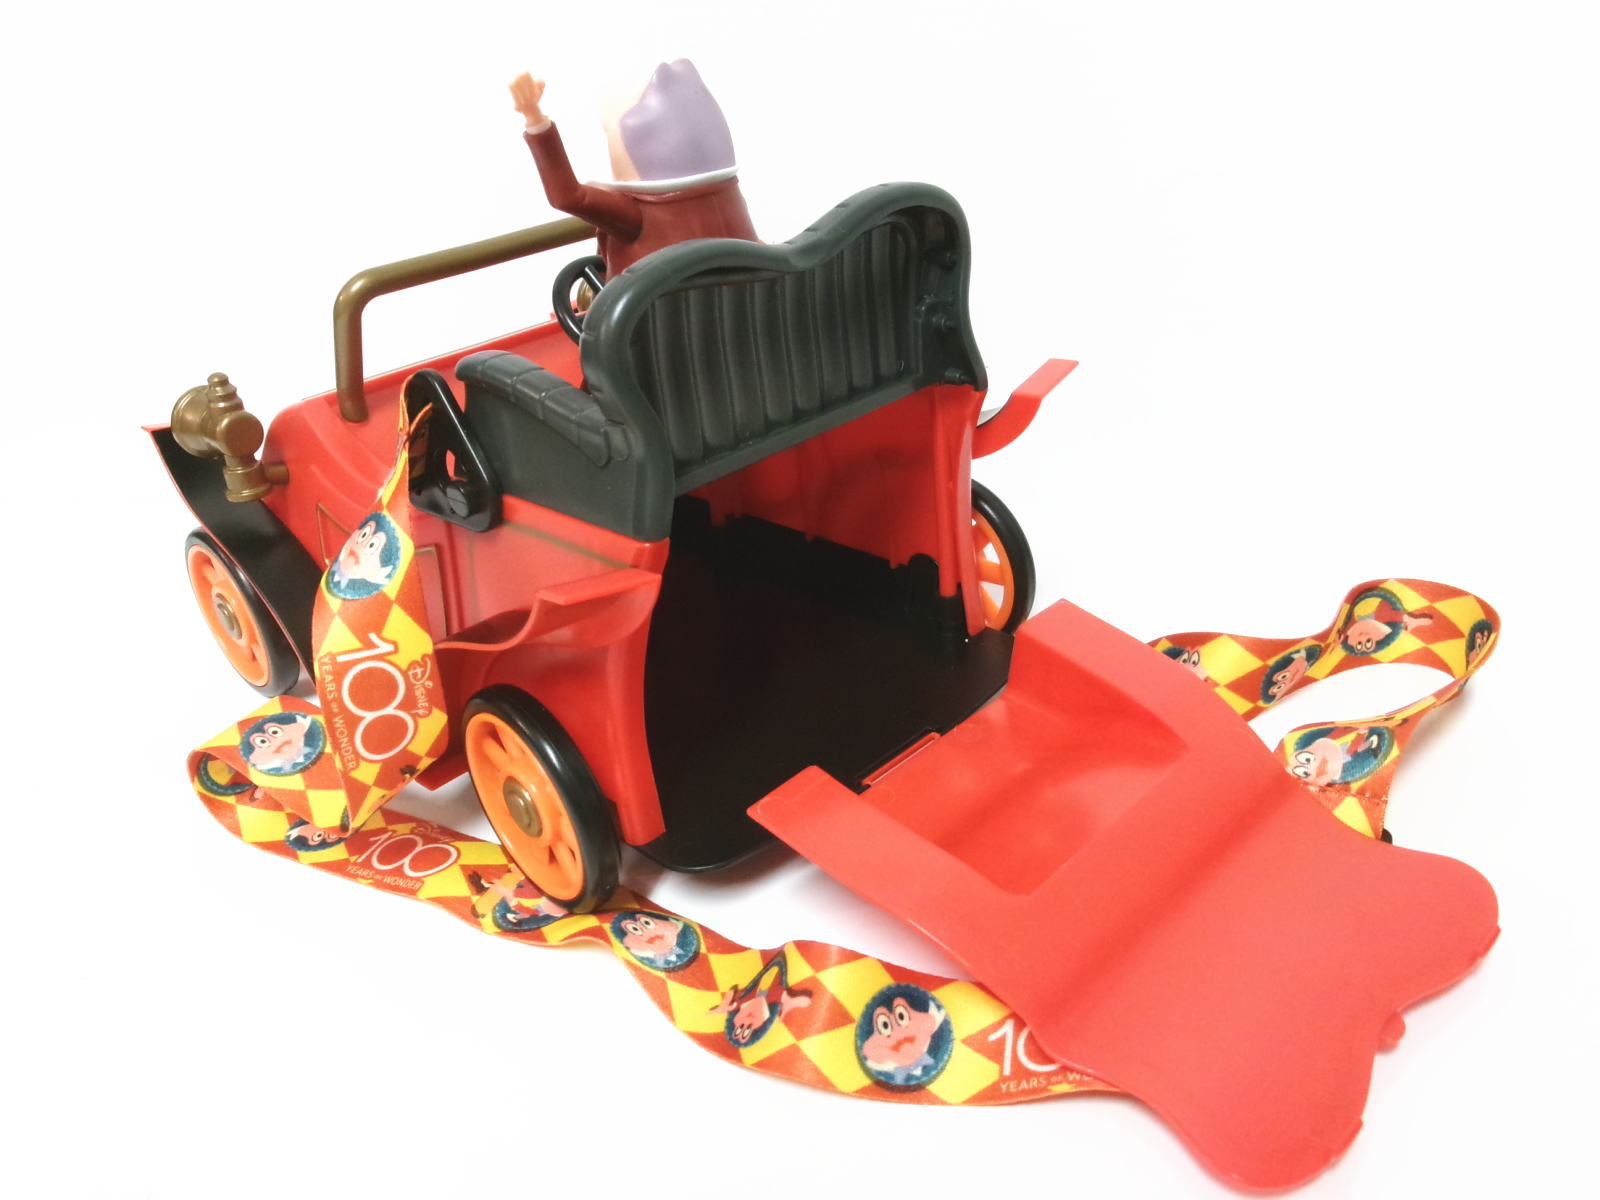 トード氏のワイルドライド 車 ポップコーンバケット ディズニーランド アトラクション Disneyland Mr Toad Wild Ride Car